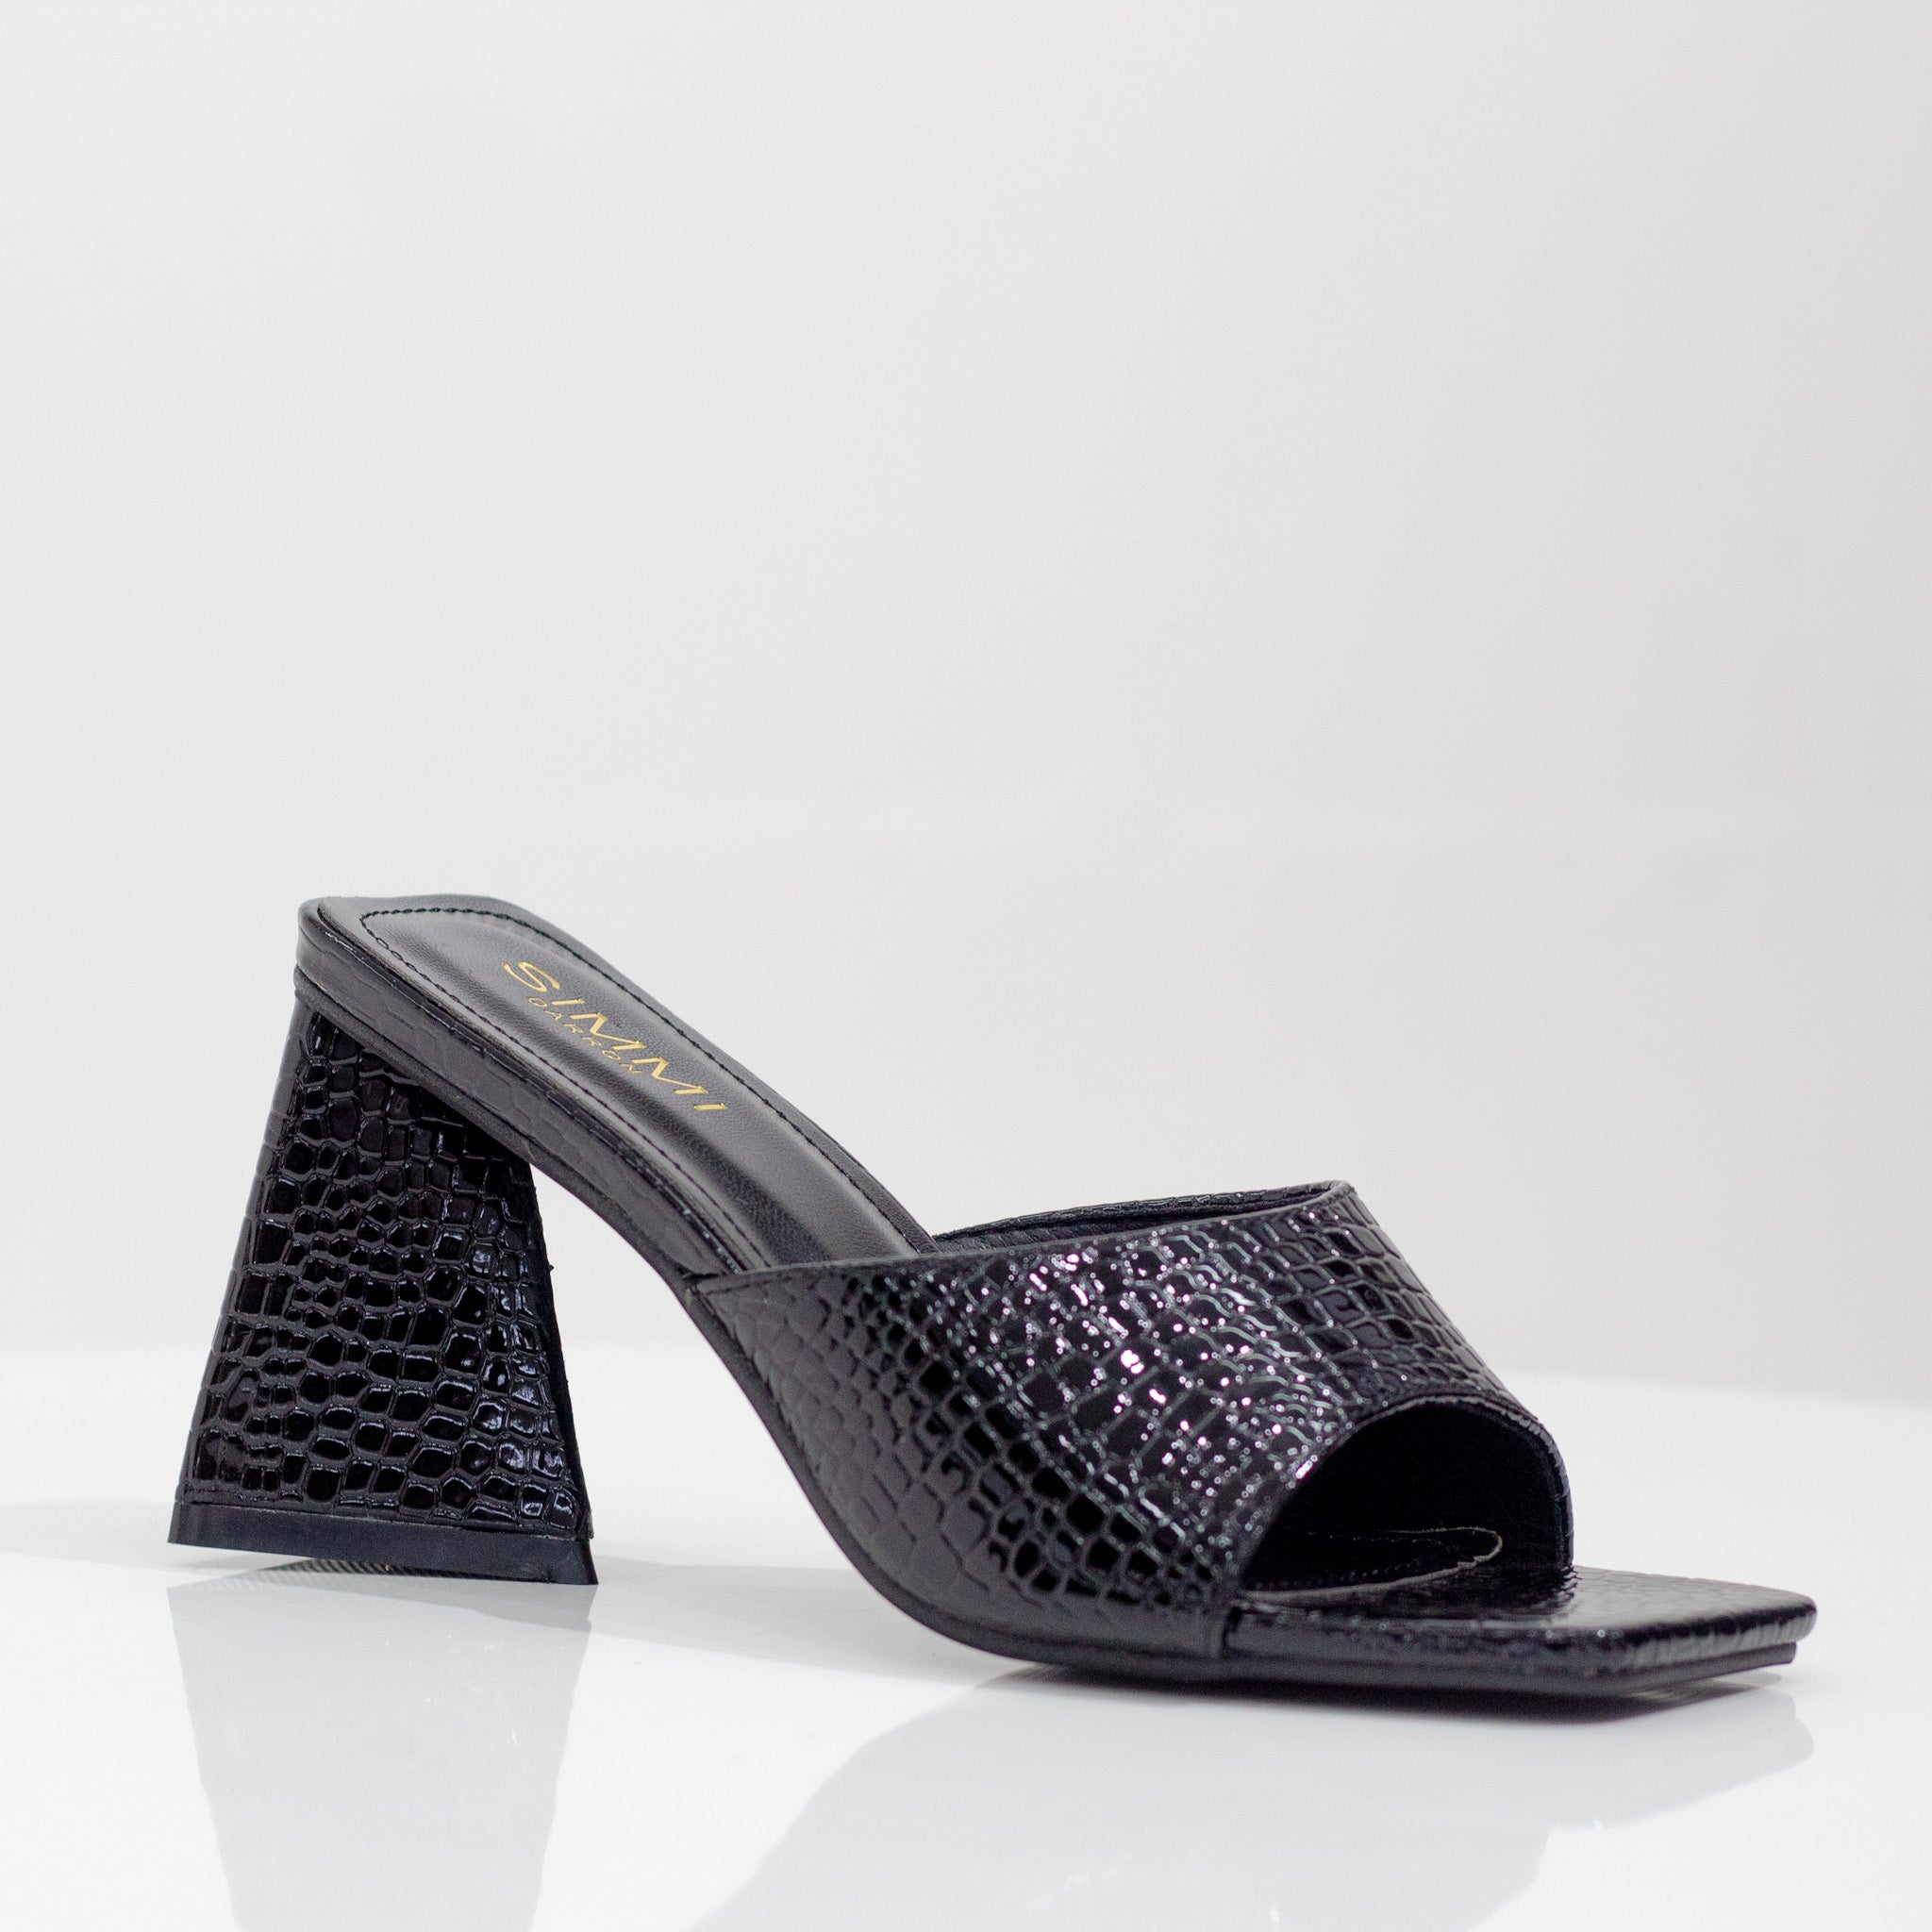 one band croc slide on 8cm heel black